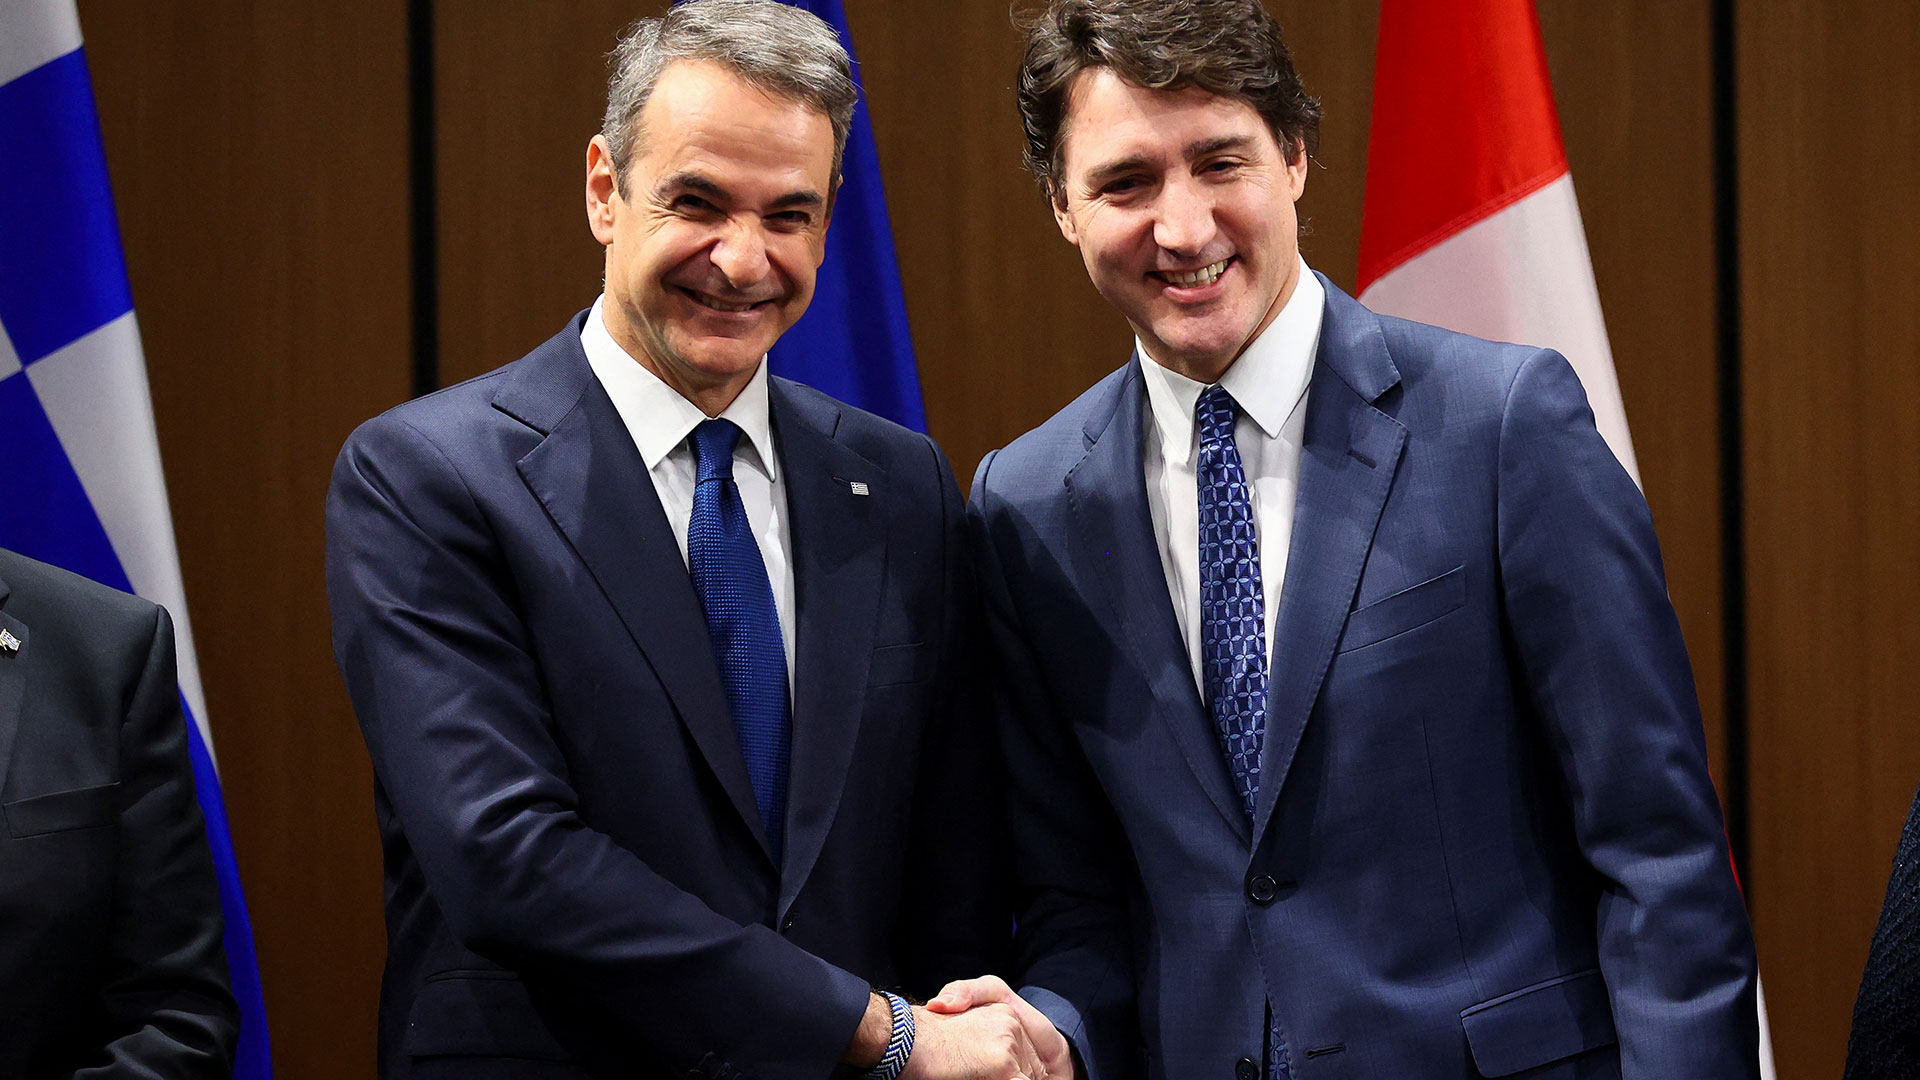 Κοινή δήλωση Μητσοτάκη - Τριντό: Η φιλία Ελλάδας και Καναδά αντανακλάται στους στενούς δεσμούς των δυο χωρών